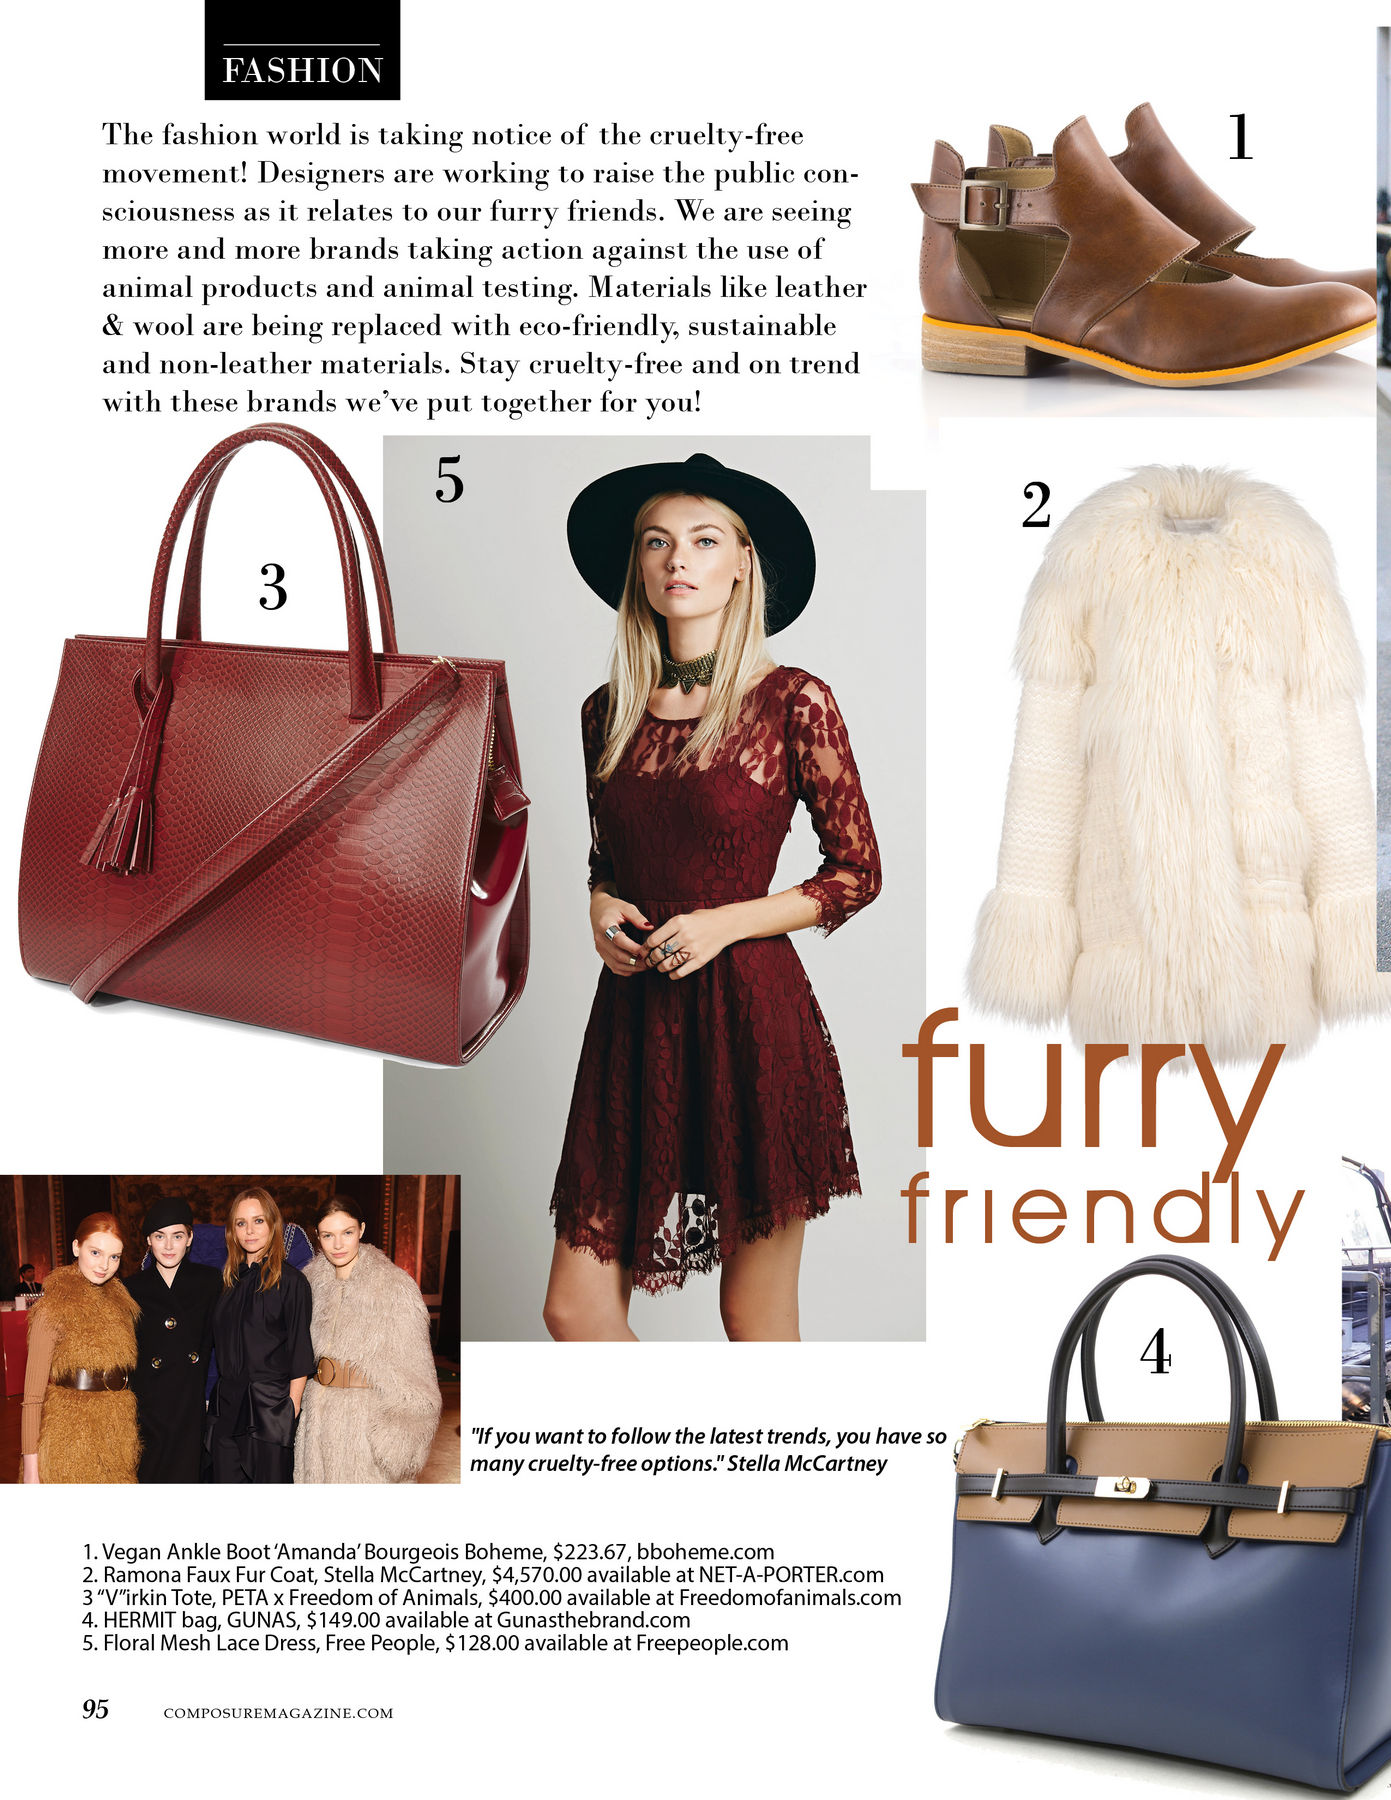 Furry Friendly: Fur in fashion